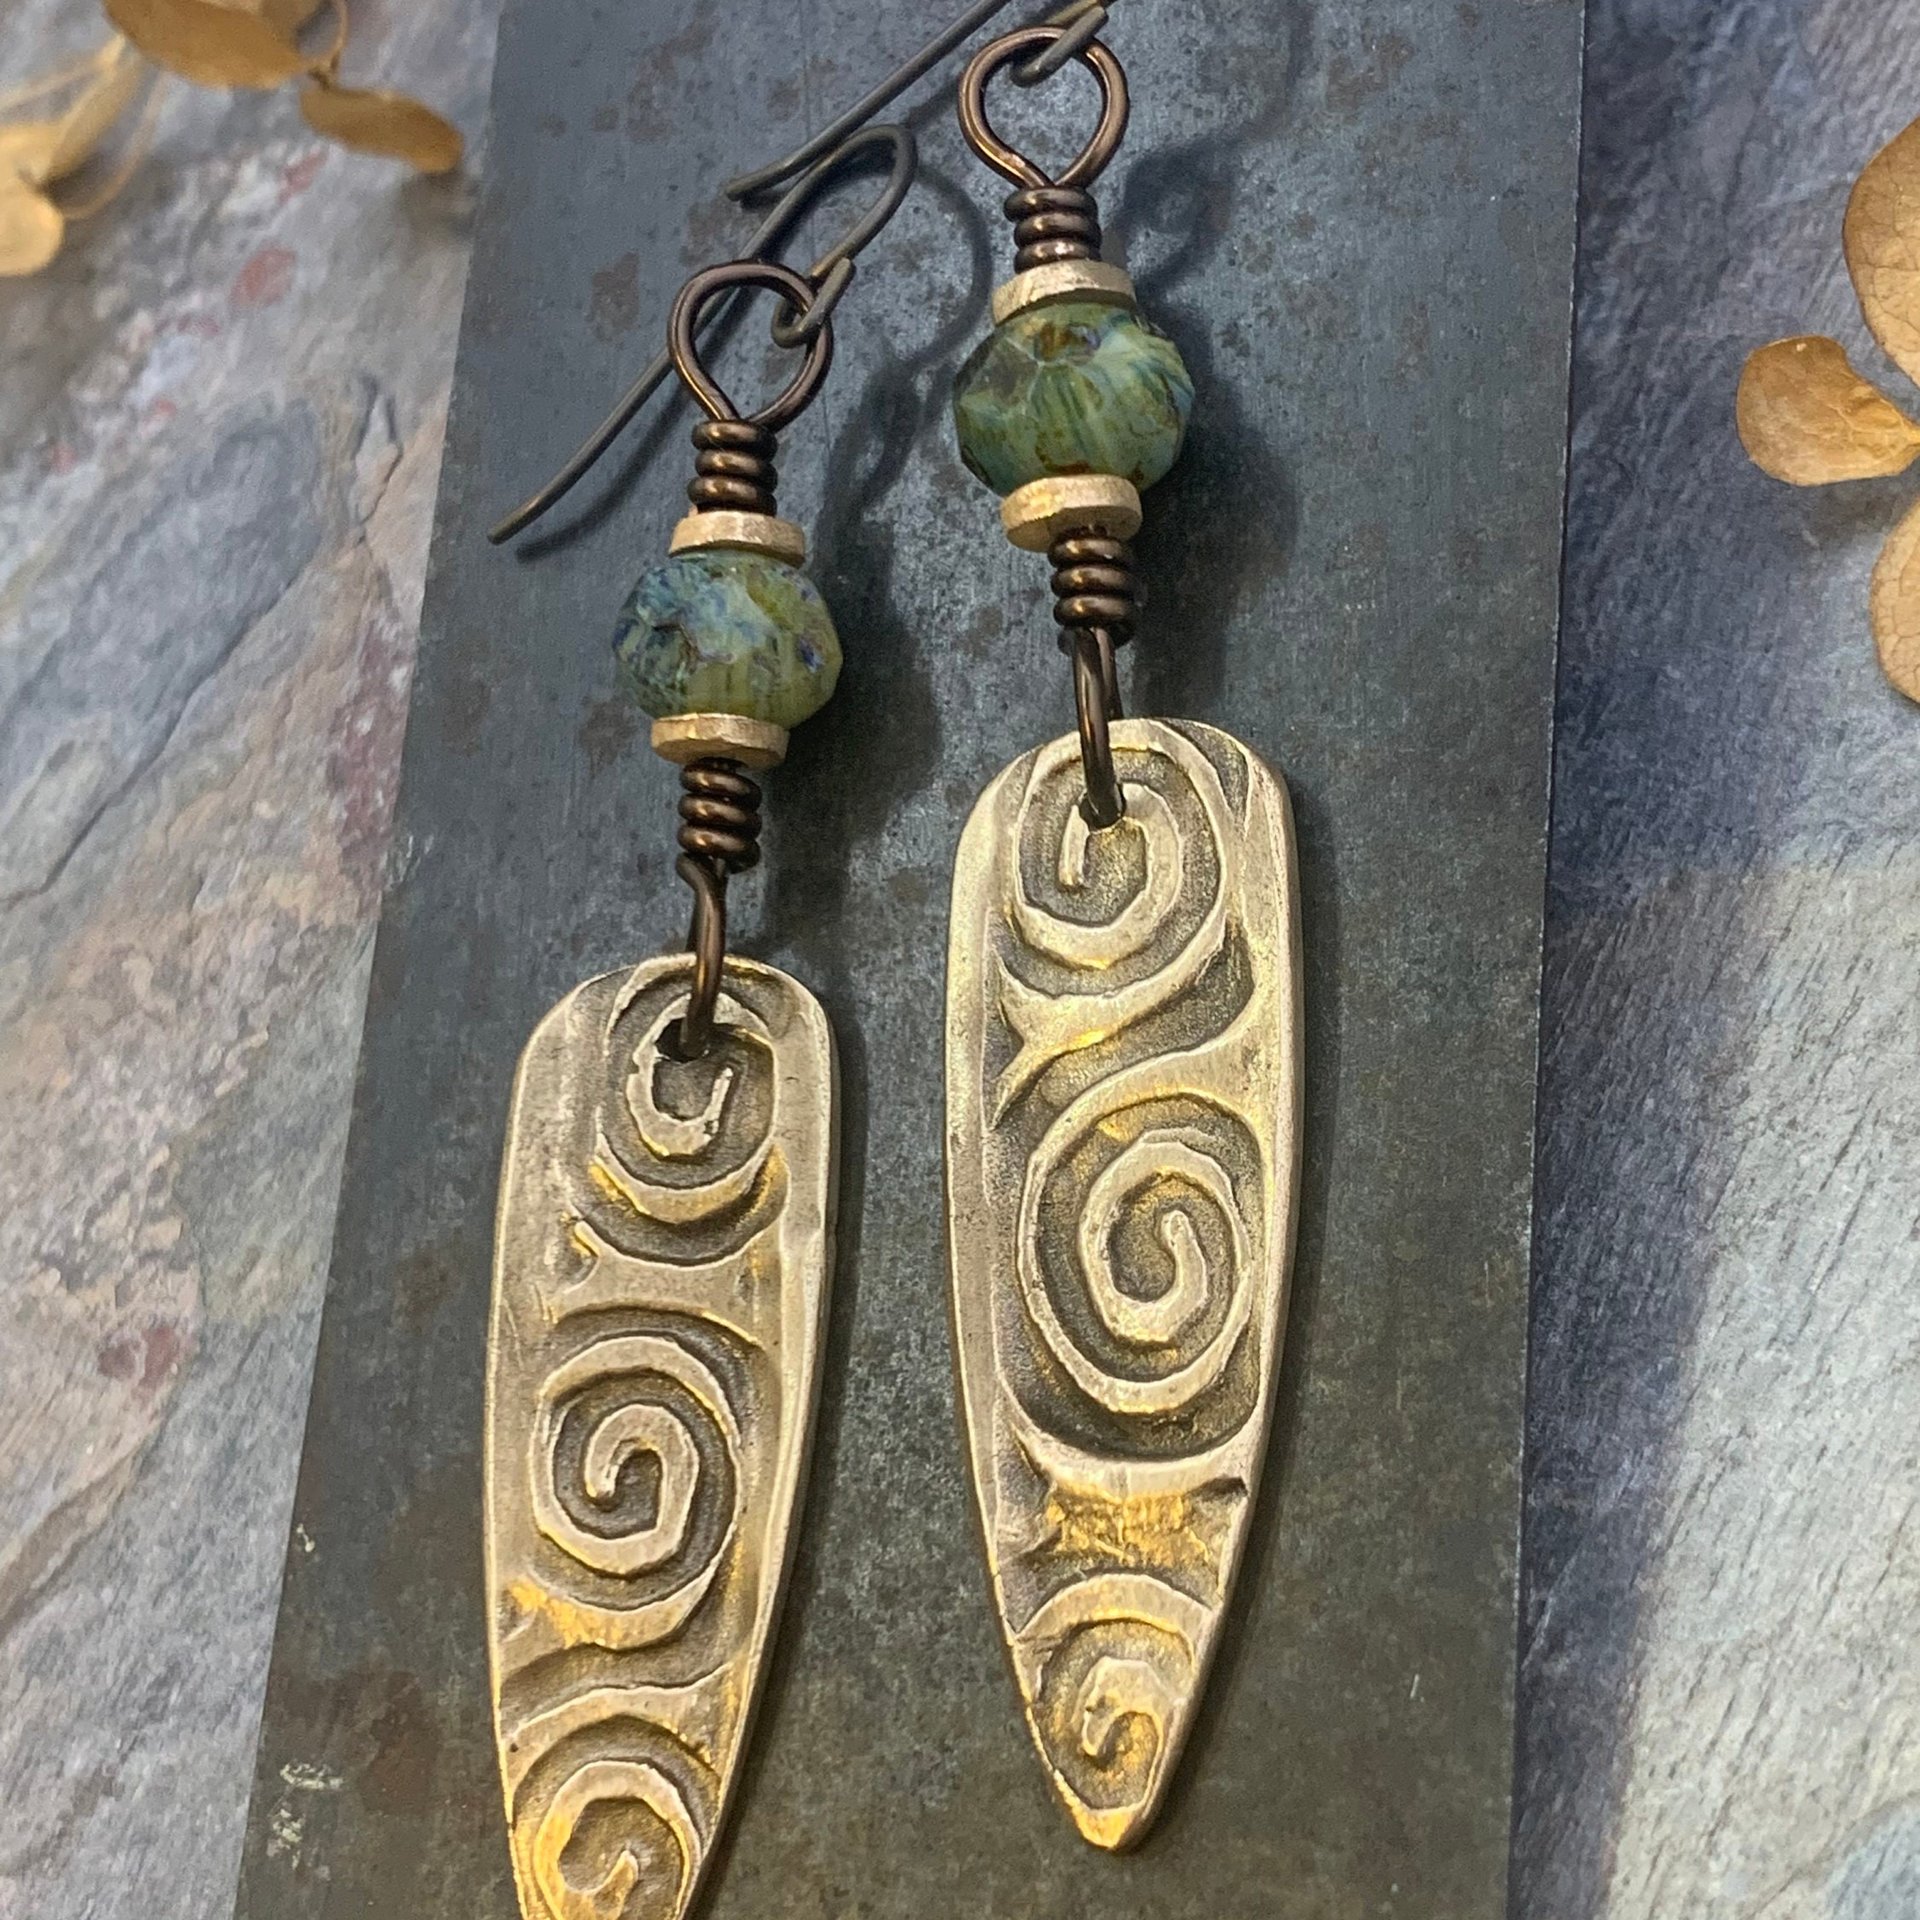 Bronze Shield Earrings, Irish Celtic Spiral, Czech Glass Beads, Hypoallergenic Ear Wires, Dagger Teardrop, Tribal Earthy Jewelry, Handmade